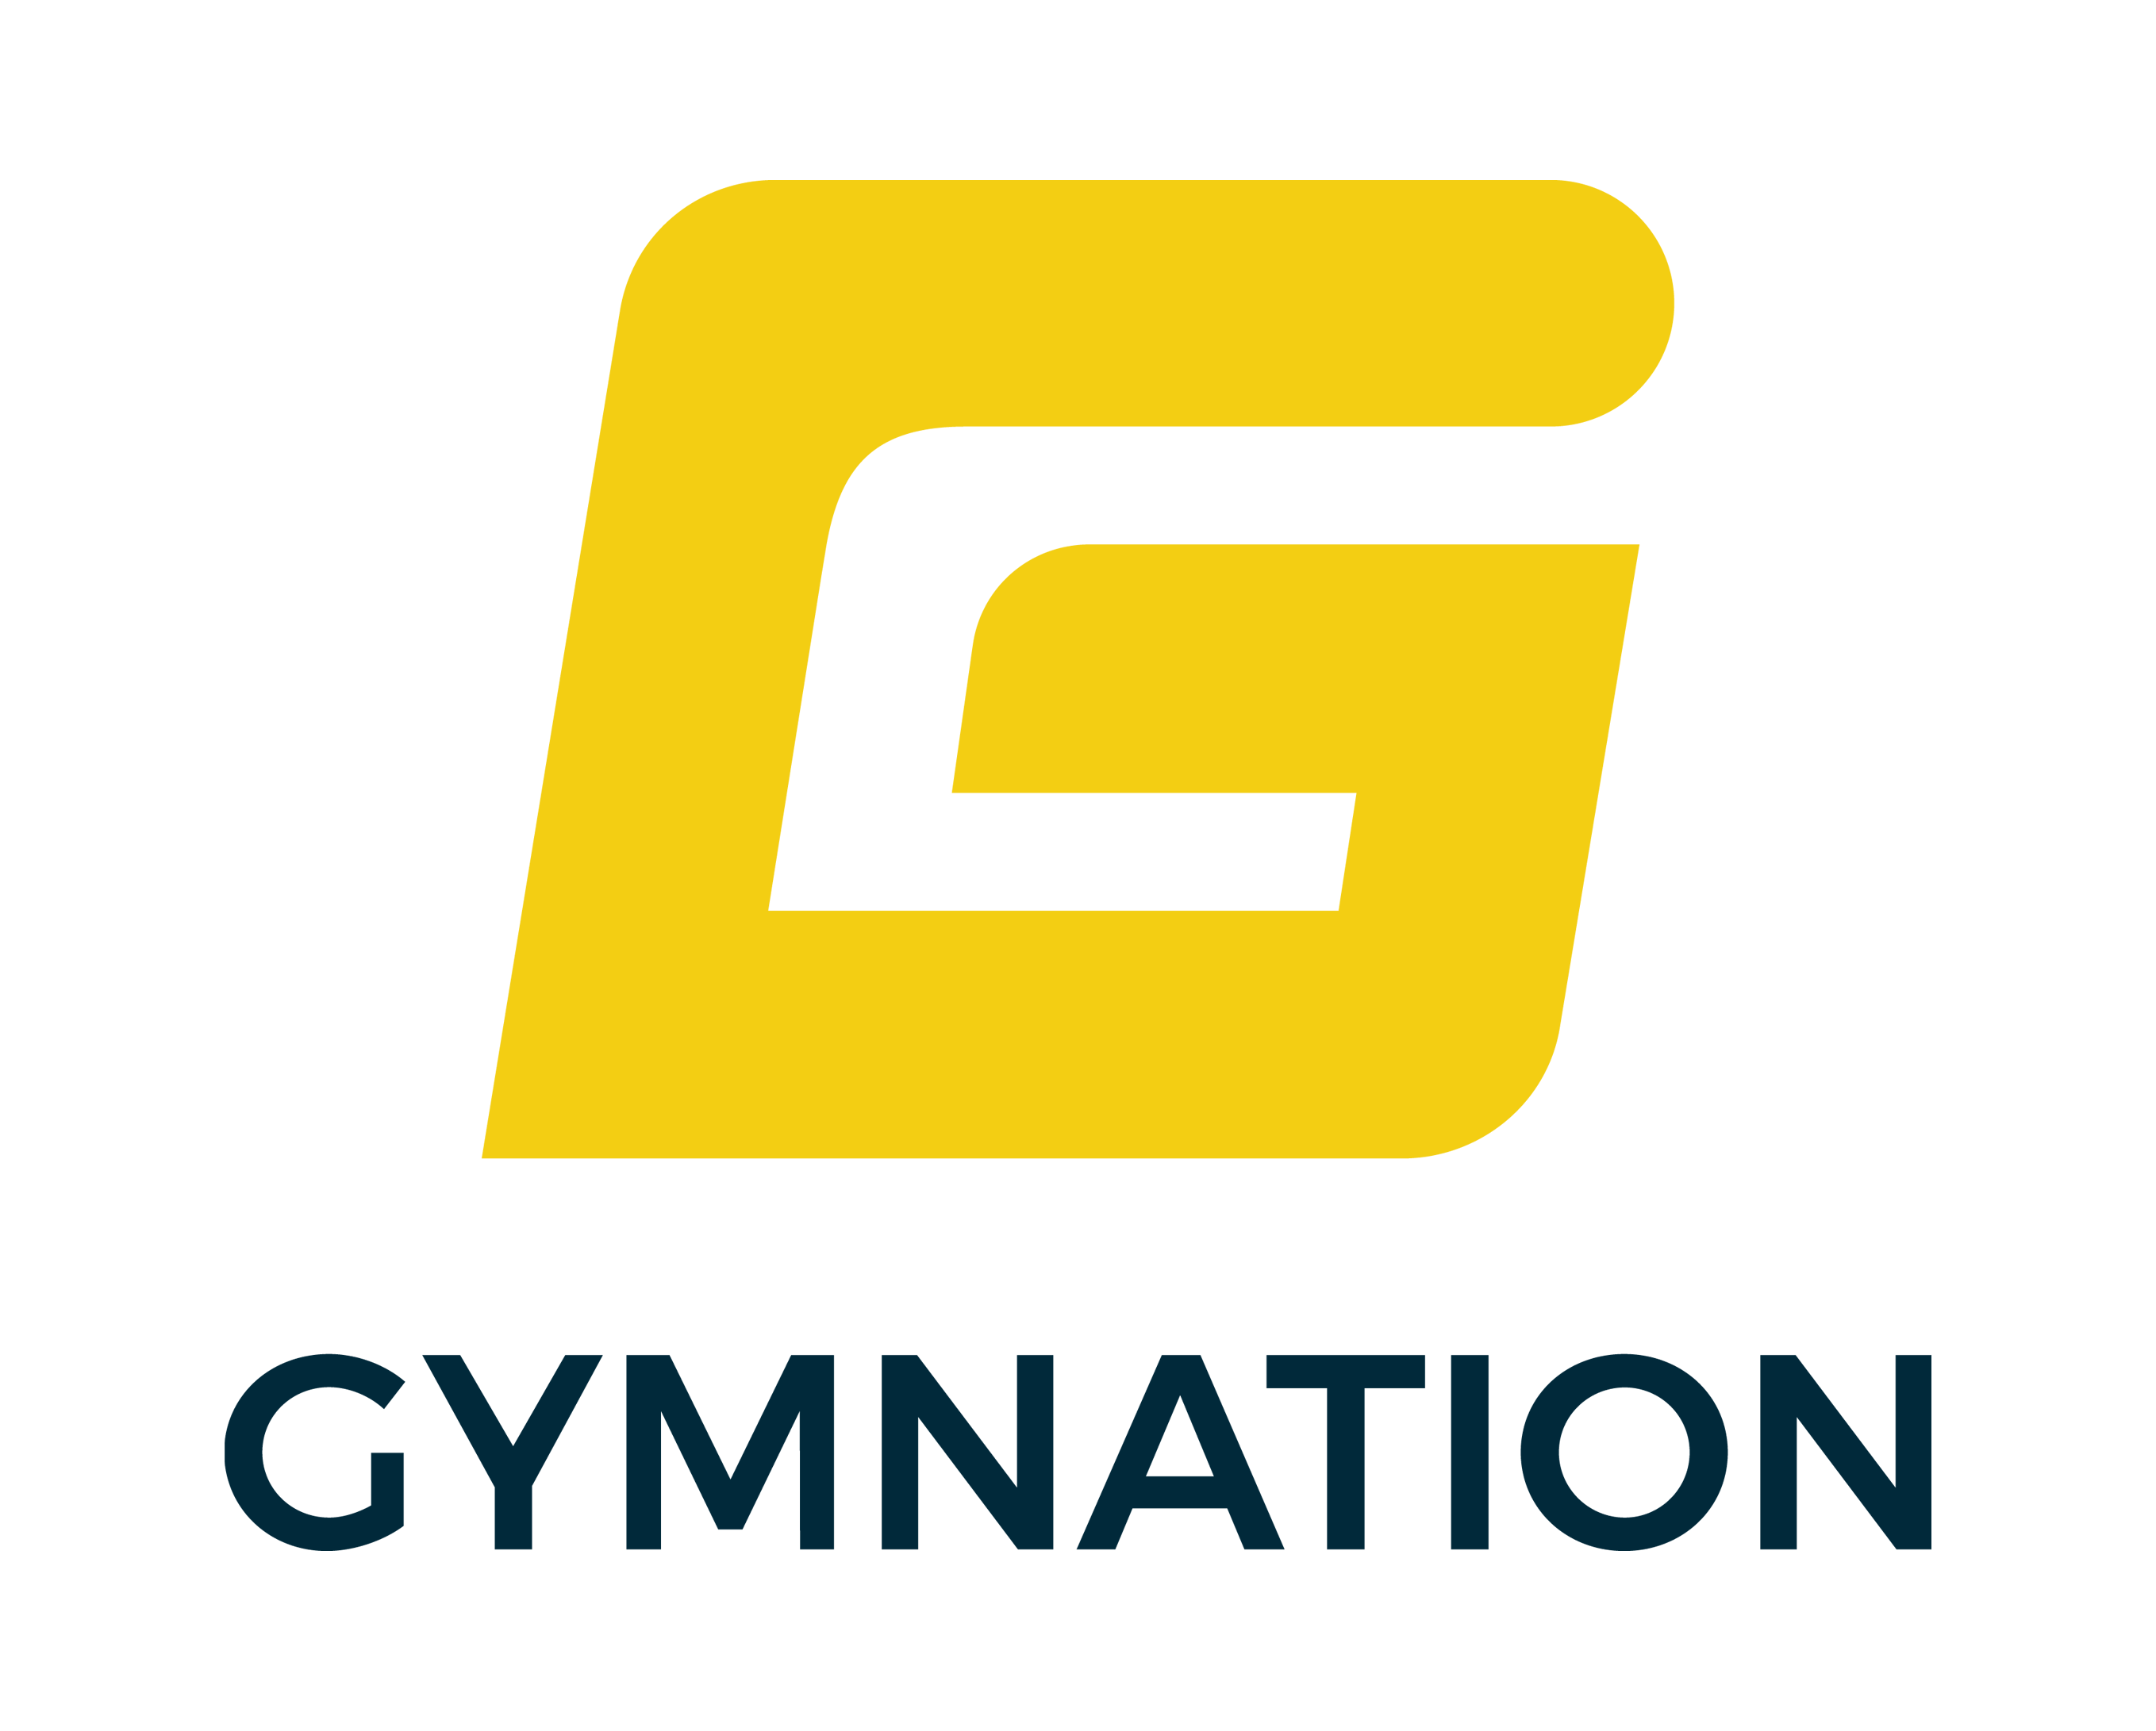 Gymnation